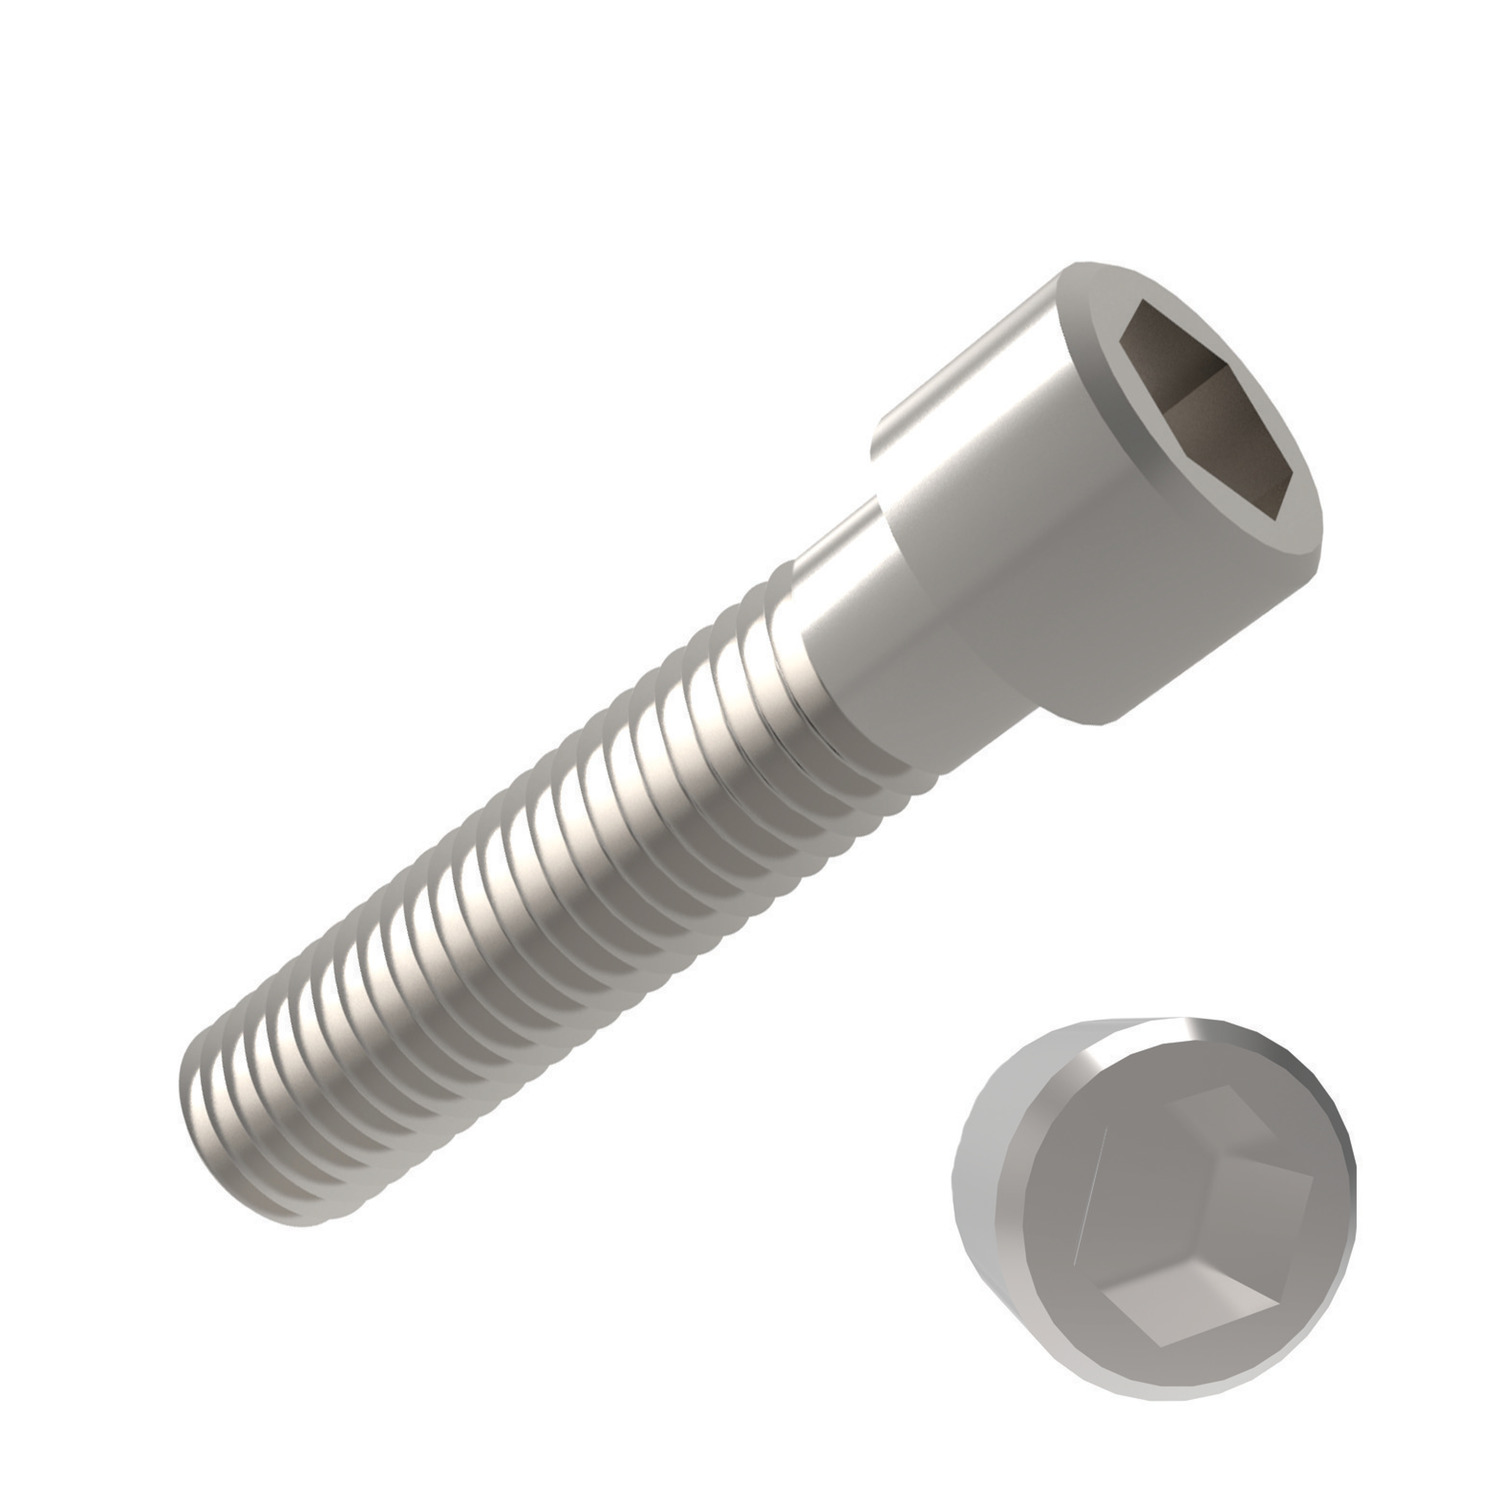 P0200.020-018-A2 Socket Cap Screw  M2x18 A2 s/s 